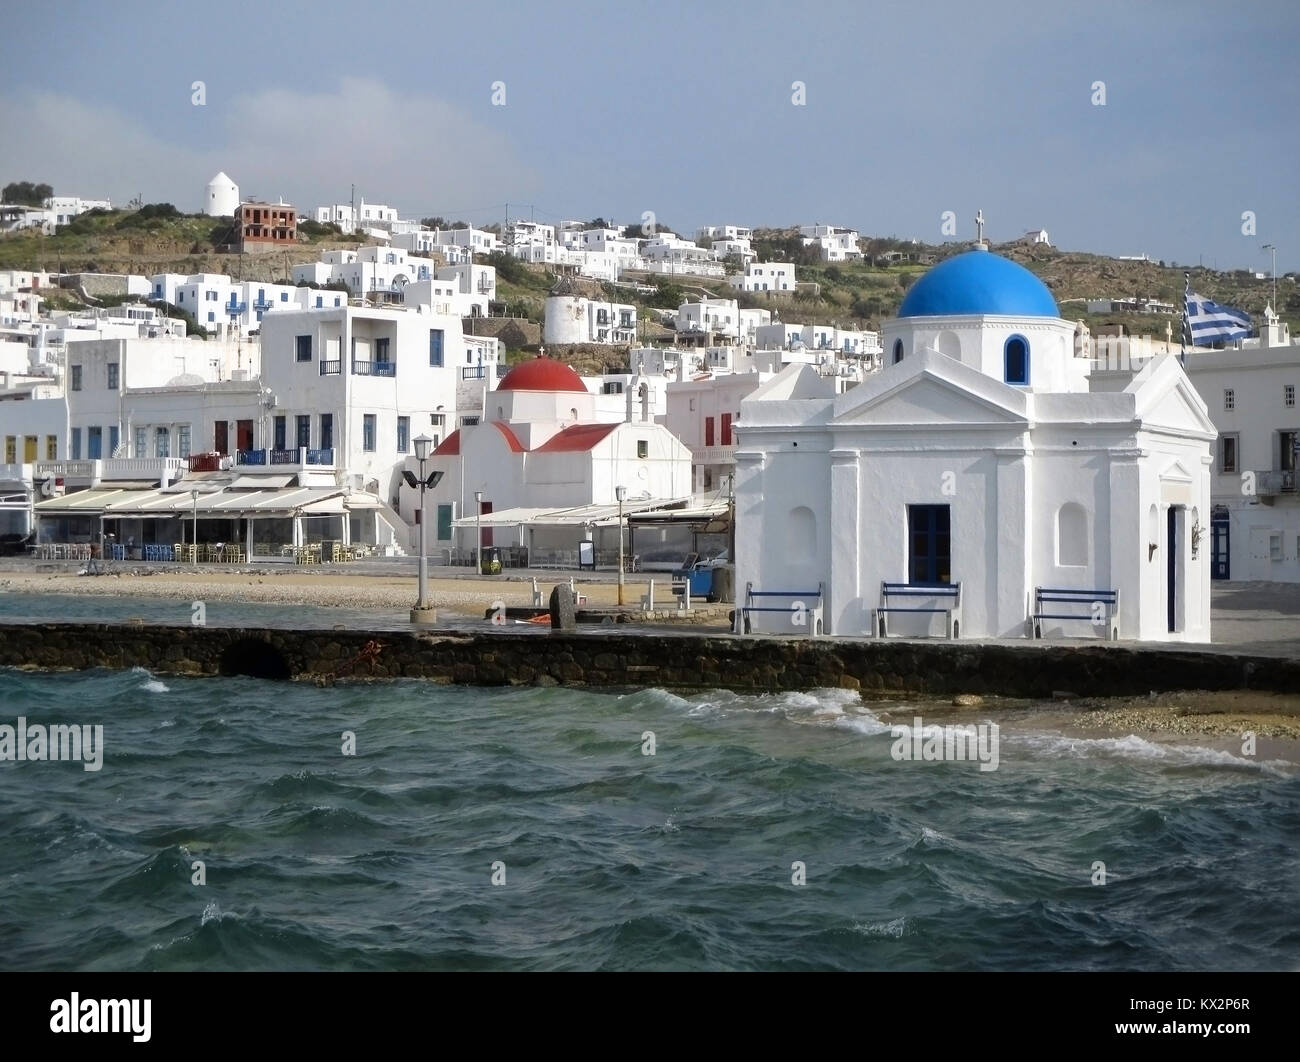 Église blanche avec dôme bleu et blanc église avec dôme rouge au bord de l'eau vieux port de Mykonos, l'île de Mykonos, Grèce Banque D'Images